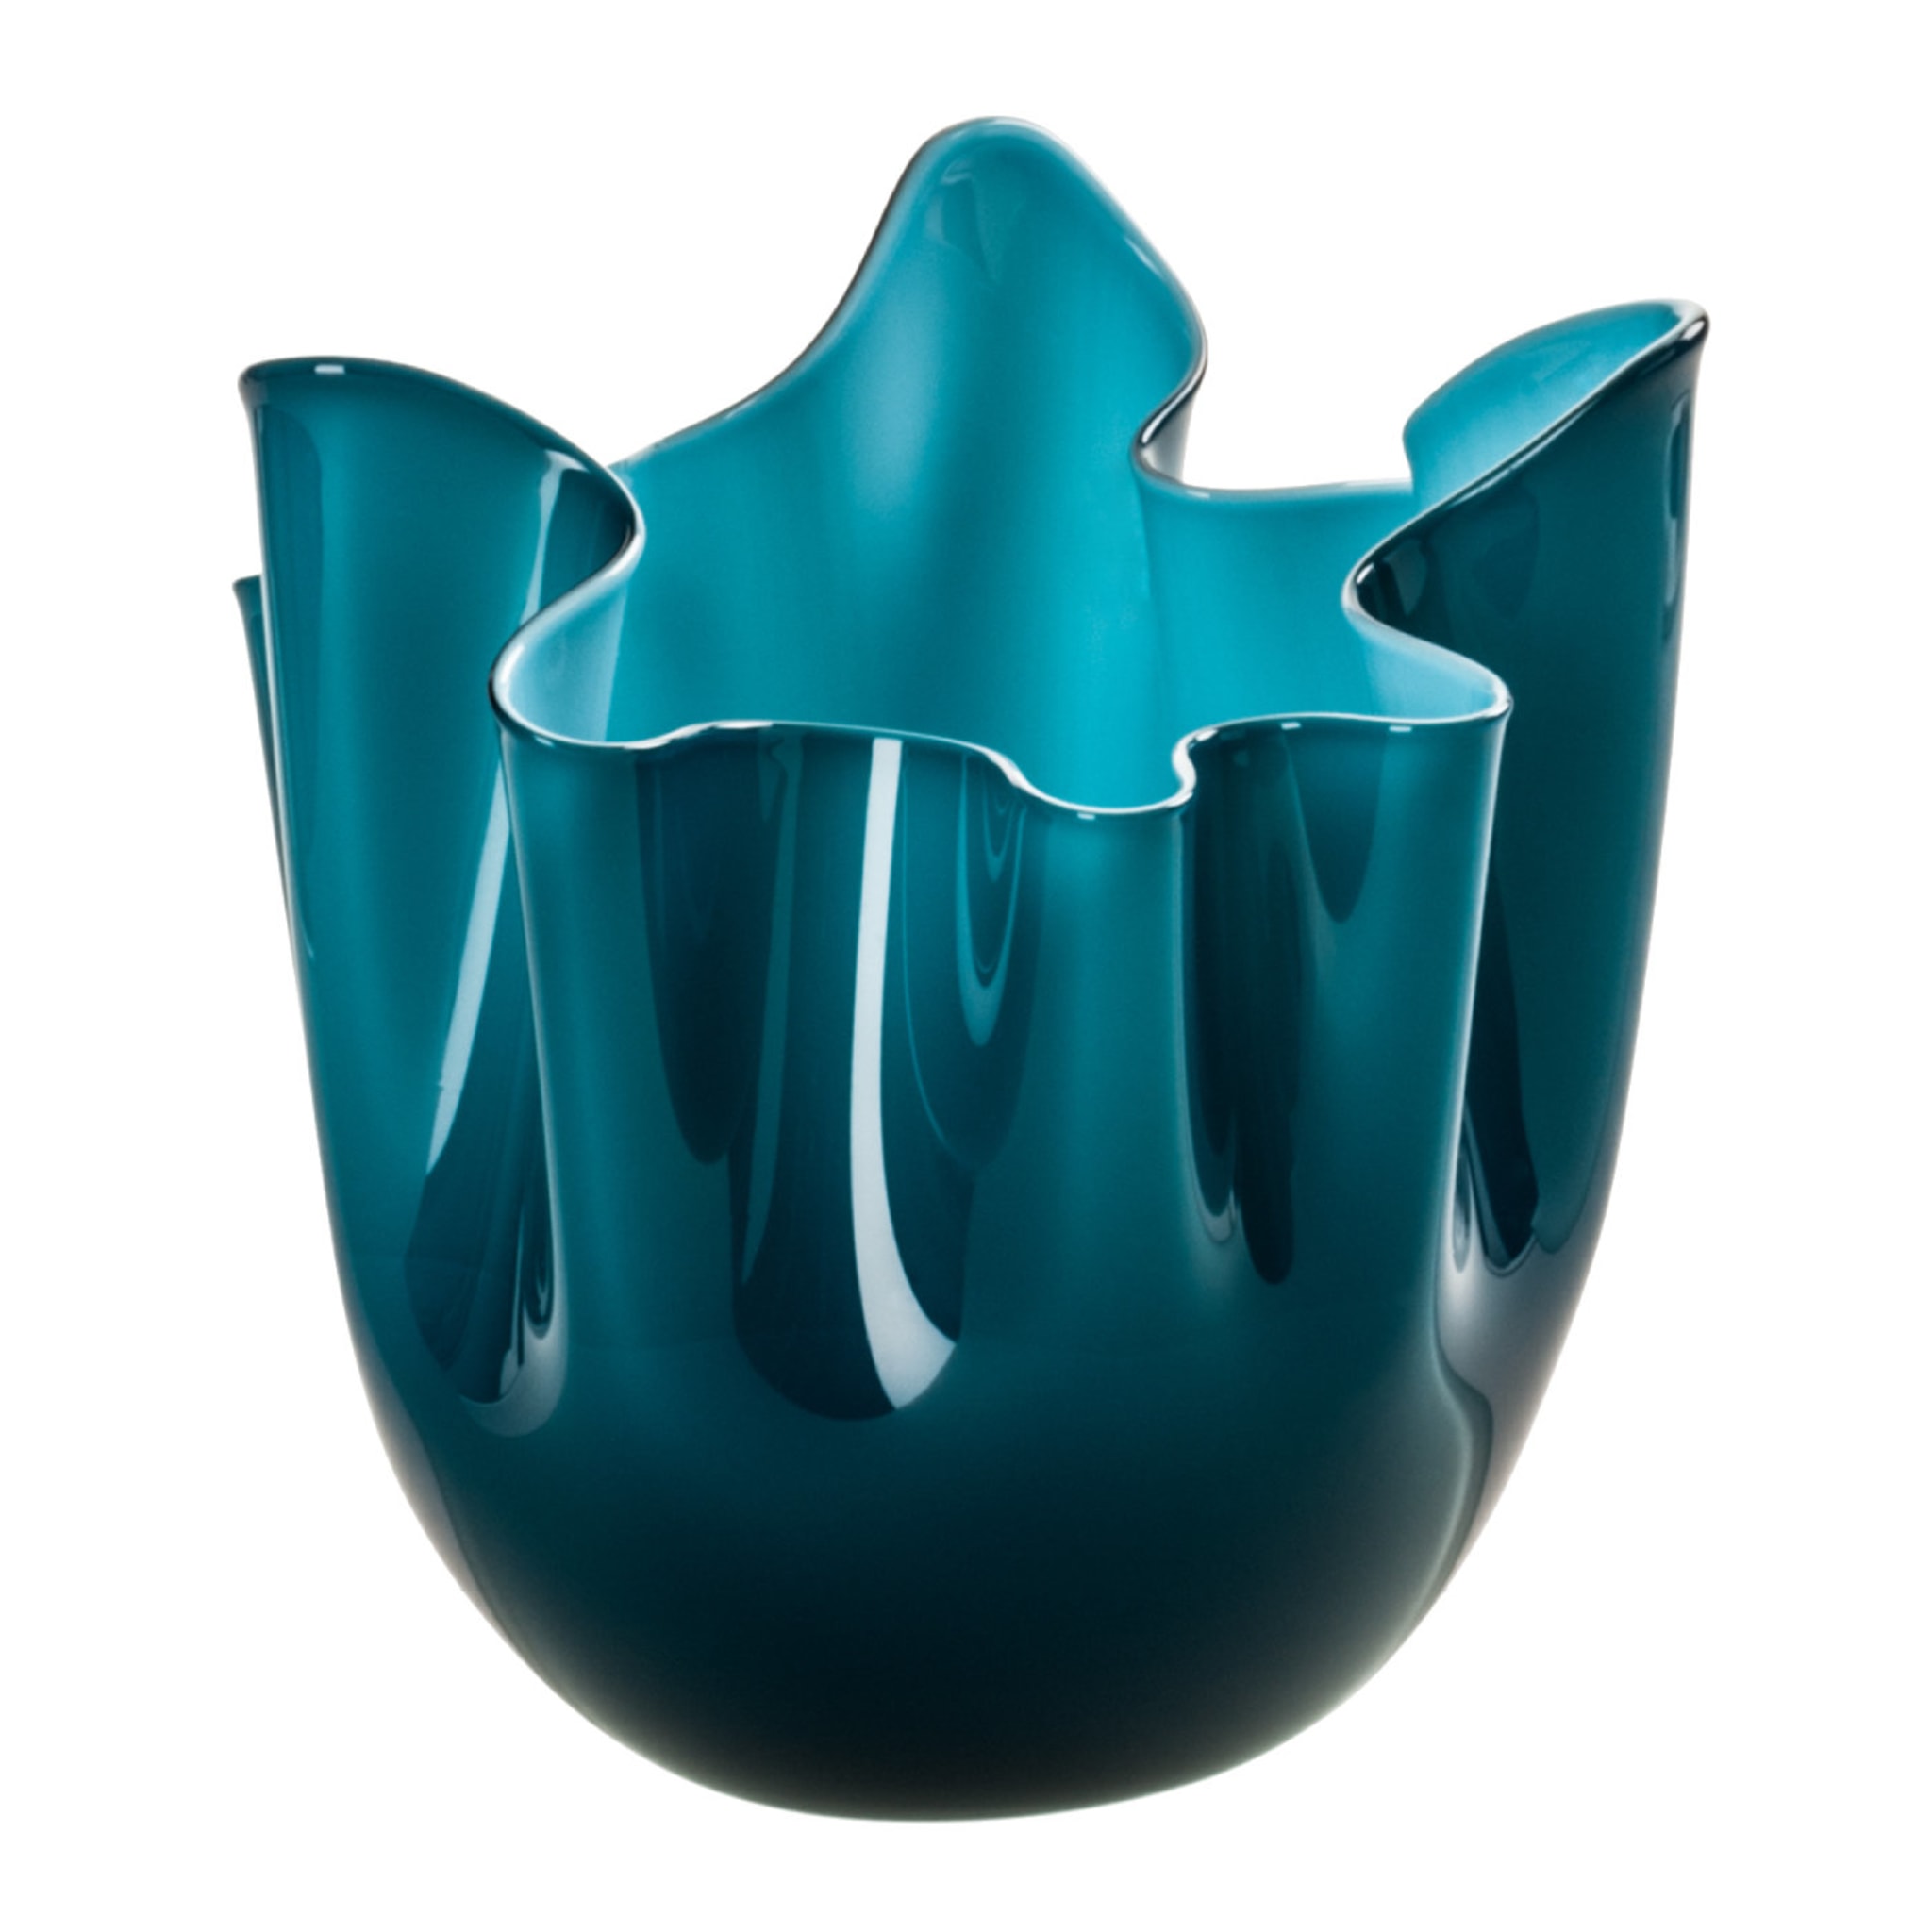 Fazzoletti Cerulean/Aqua Vase by Fulvio Bianconi - Main view